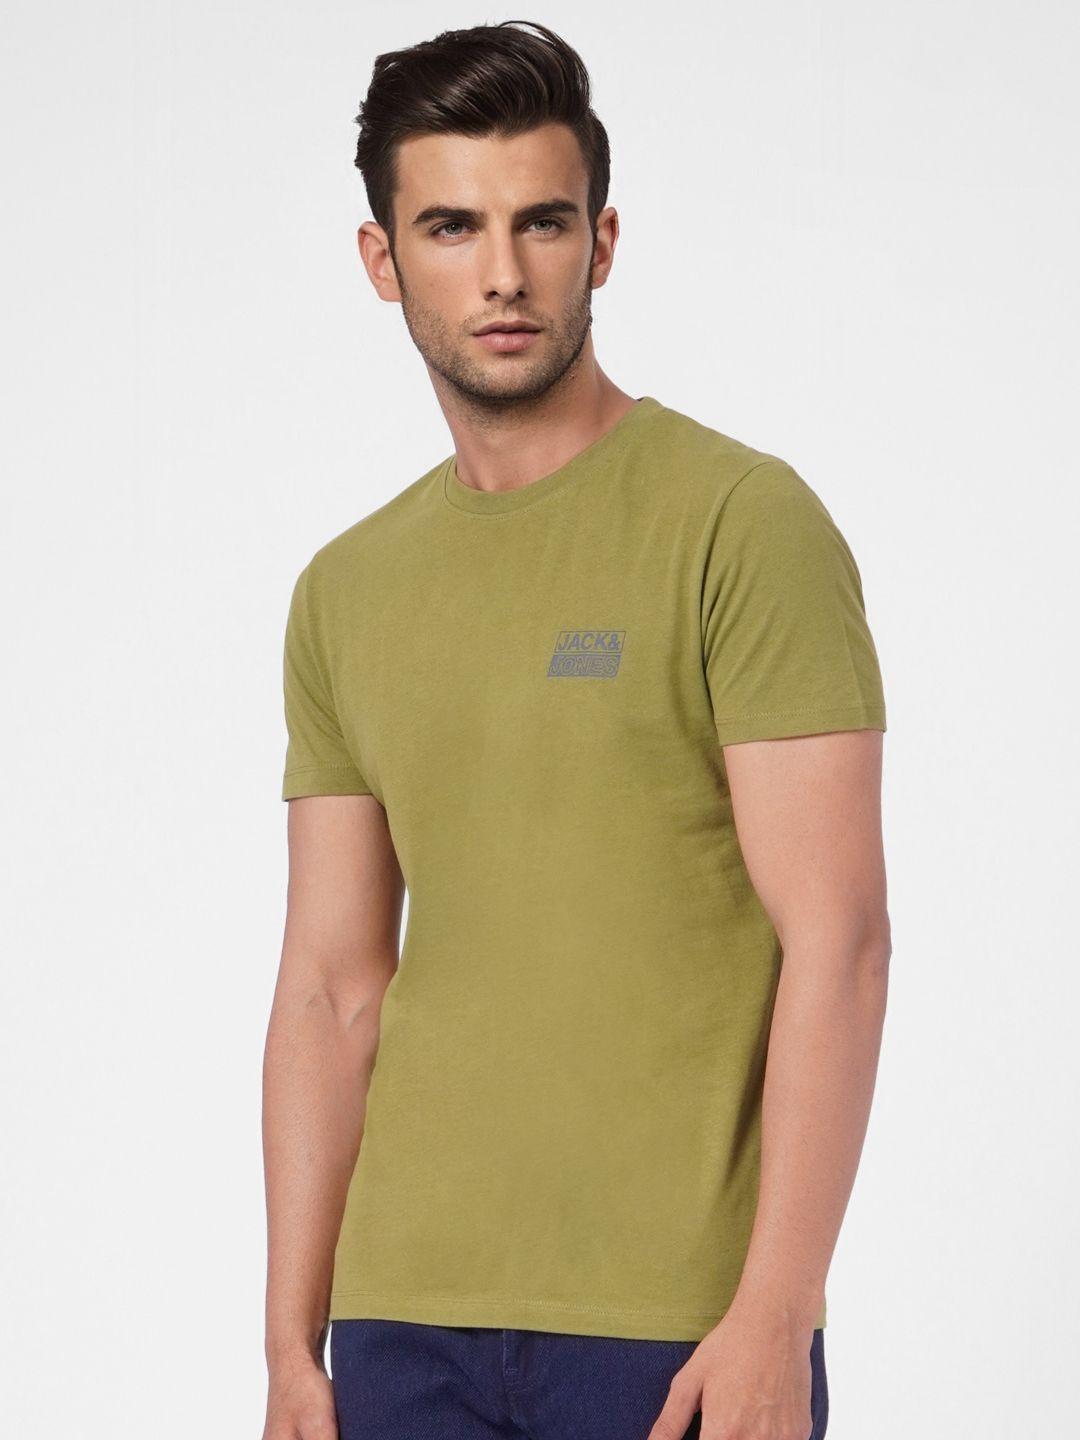 jack & jones men olive green printed slim fit casual t-shirt